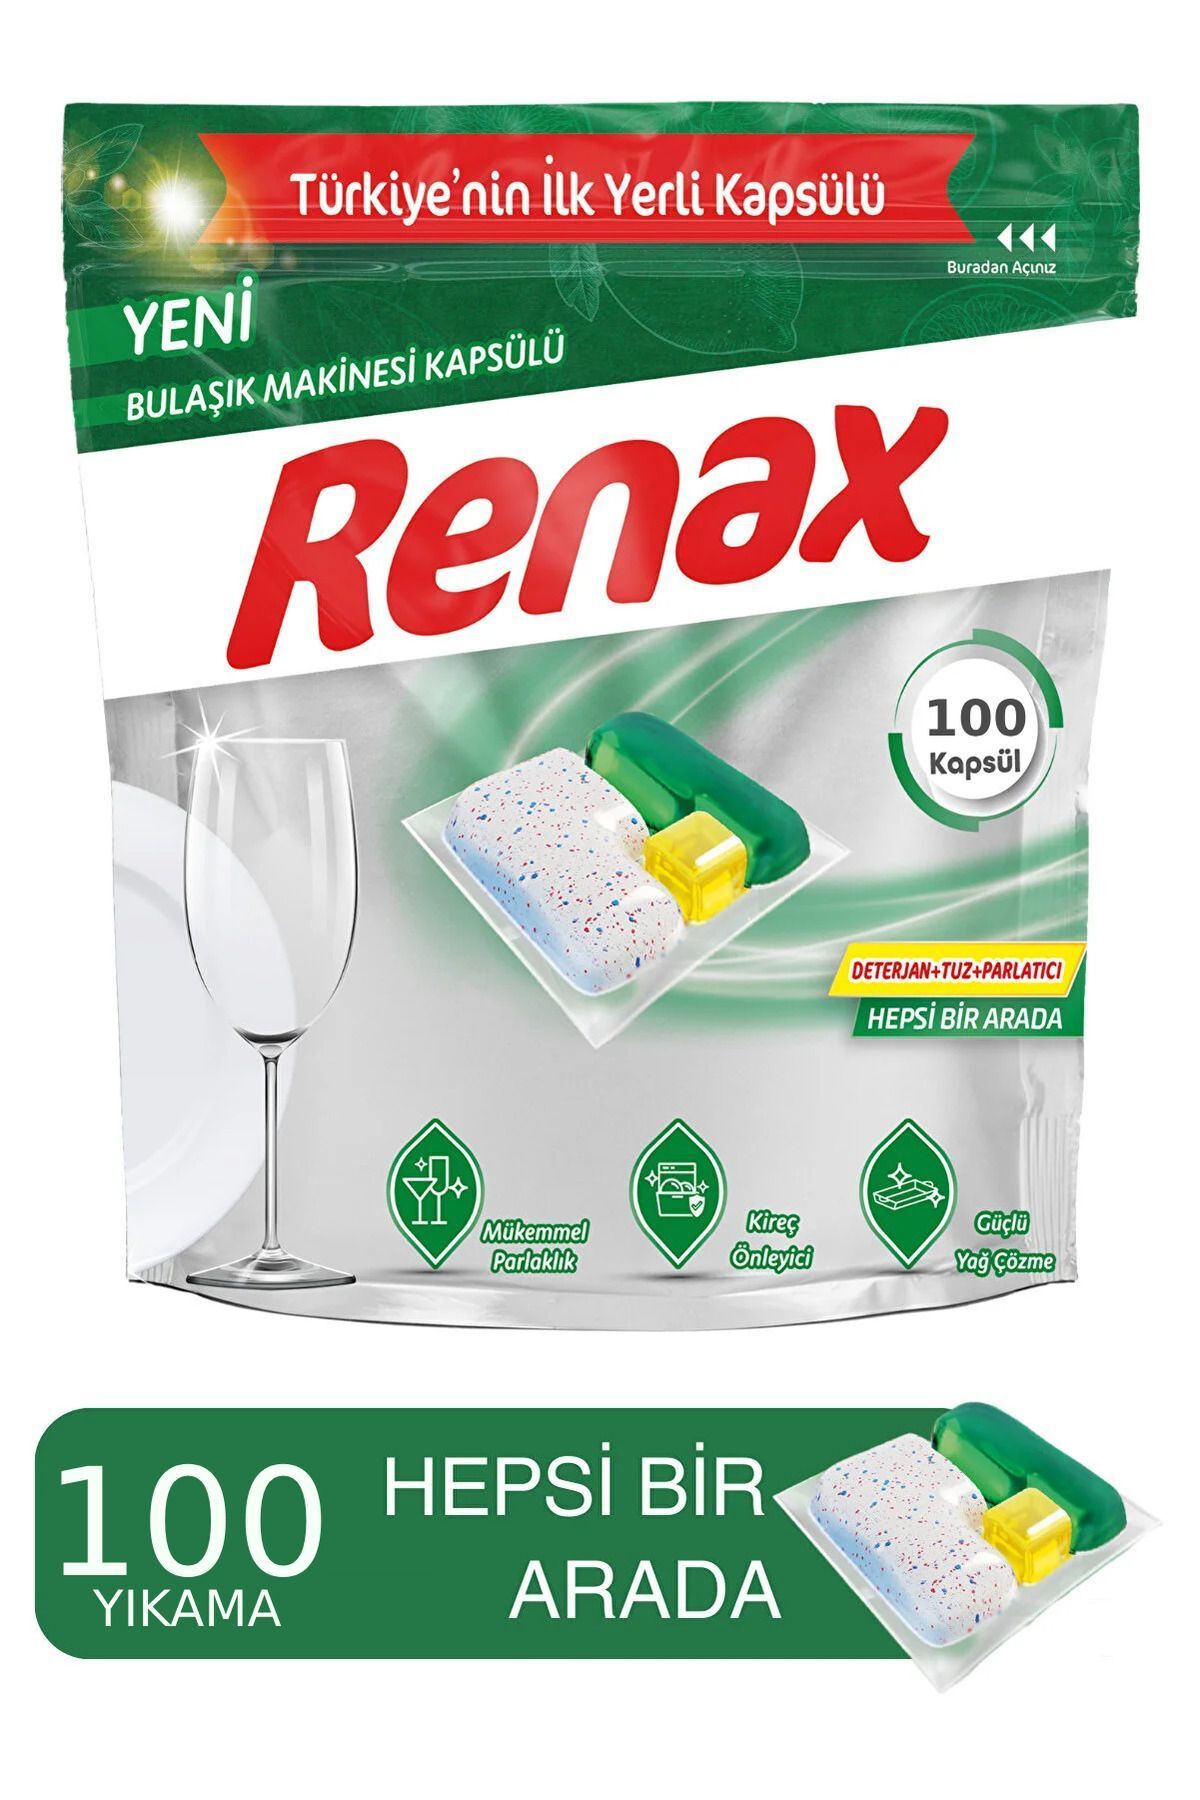 RENAX Bulaşık Makinesi Kapsülü Hepsi Bir Arada 100 lü %100 Yerli Ürün